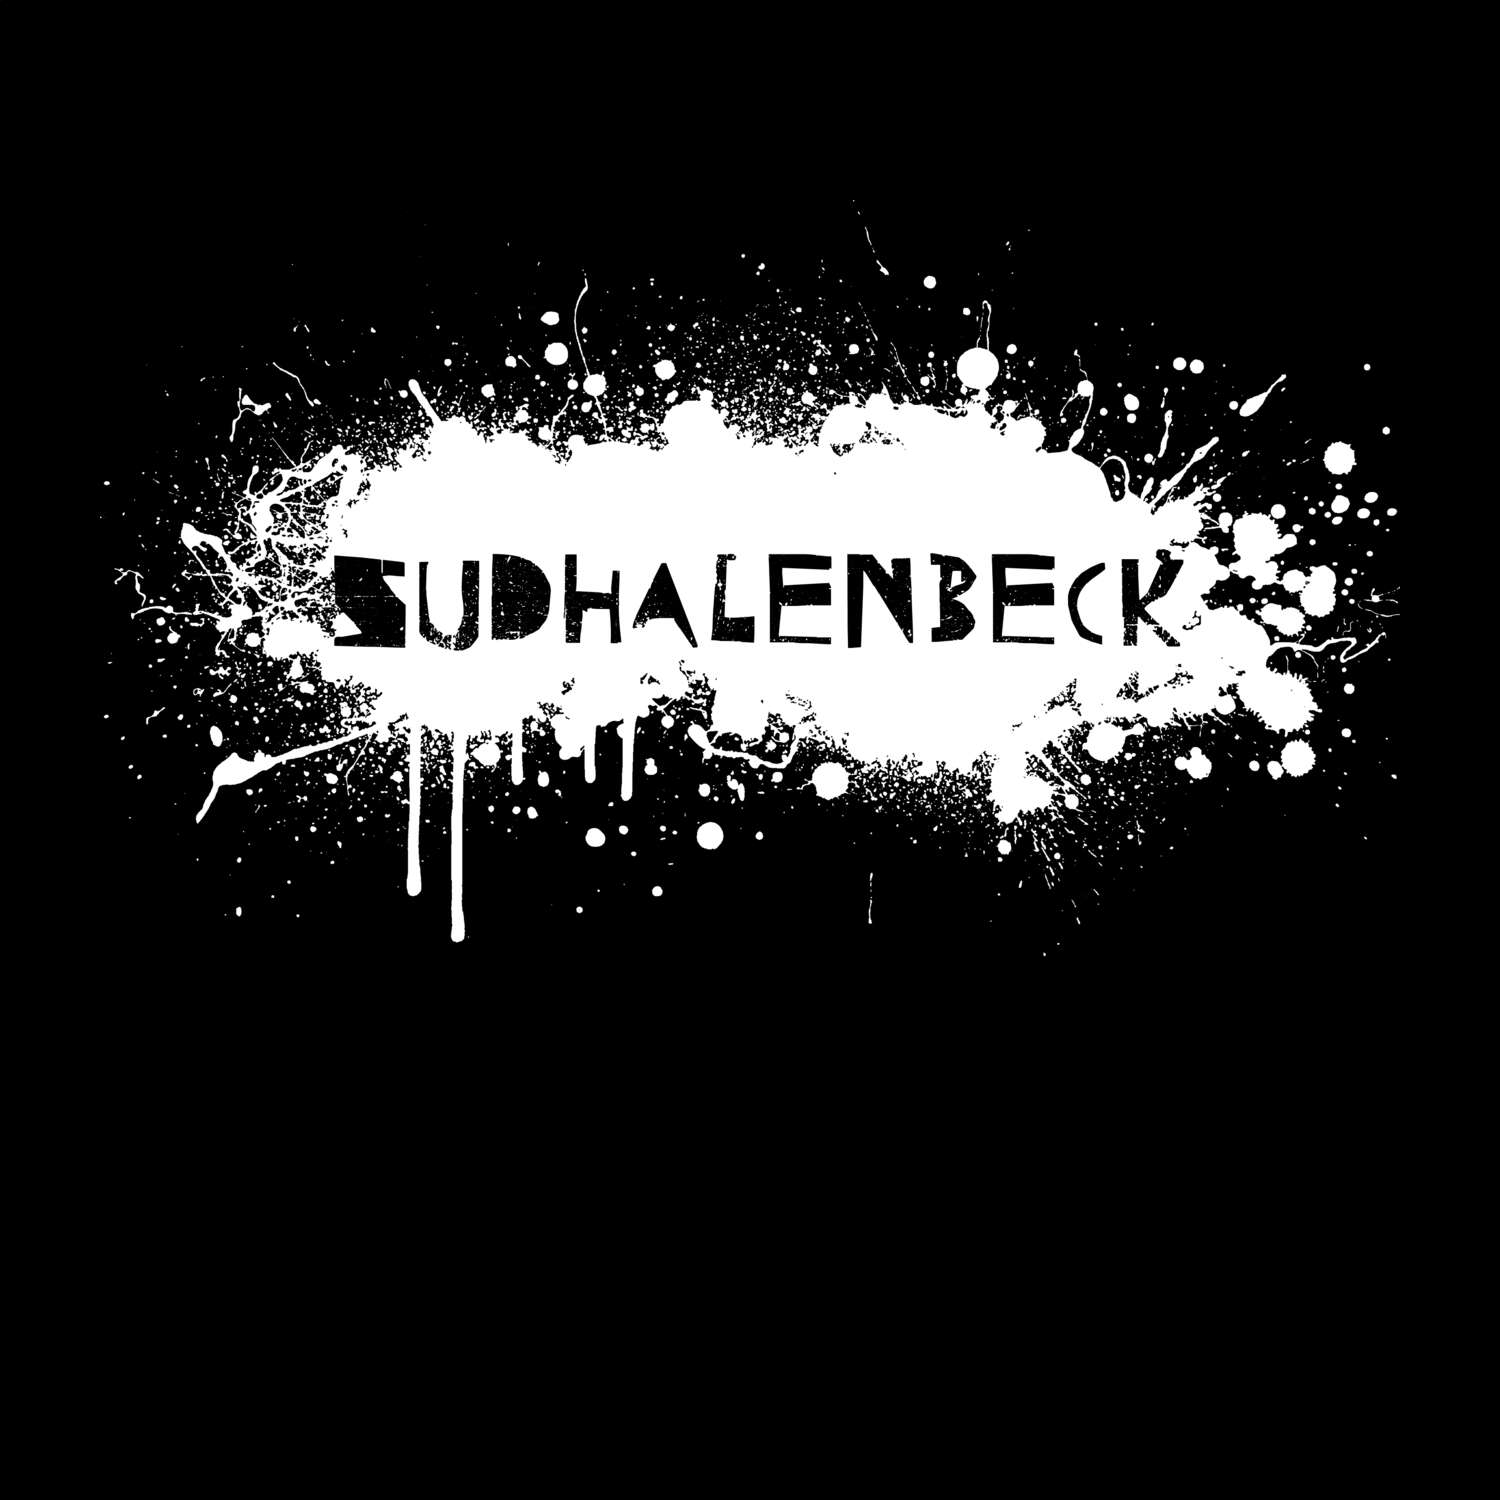 Sudhalenbeck T-Shirt »Paint Splash Punk«